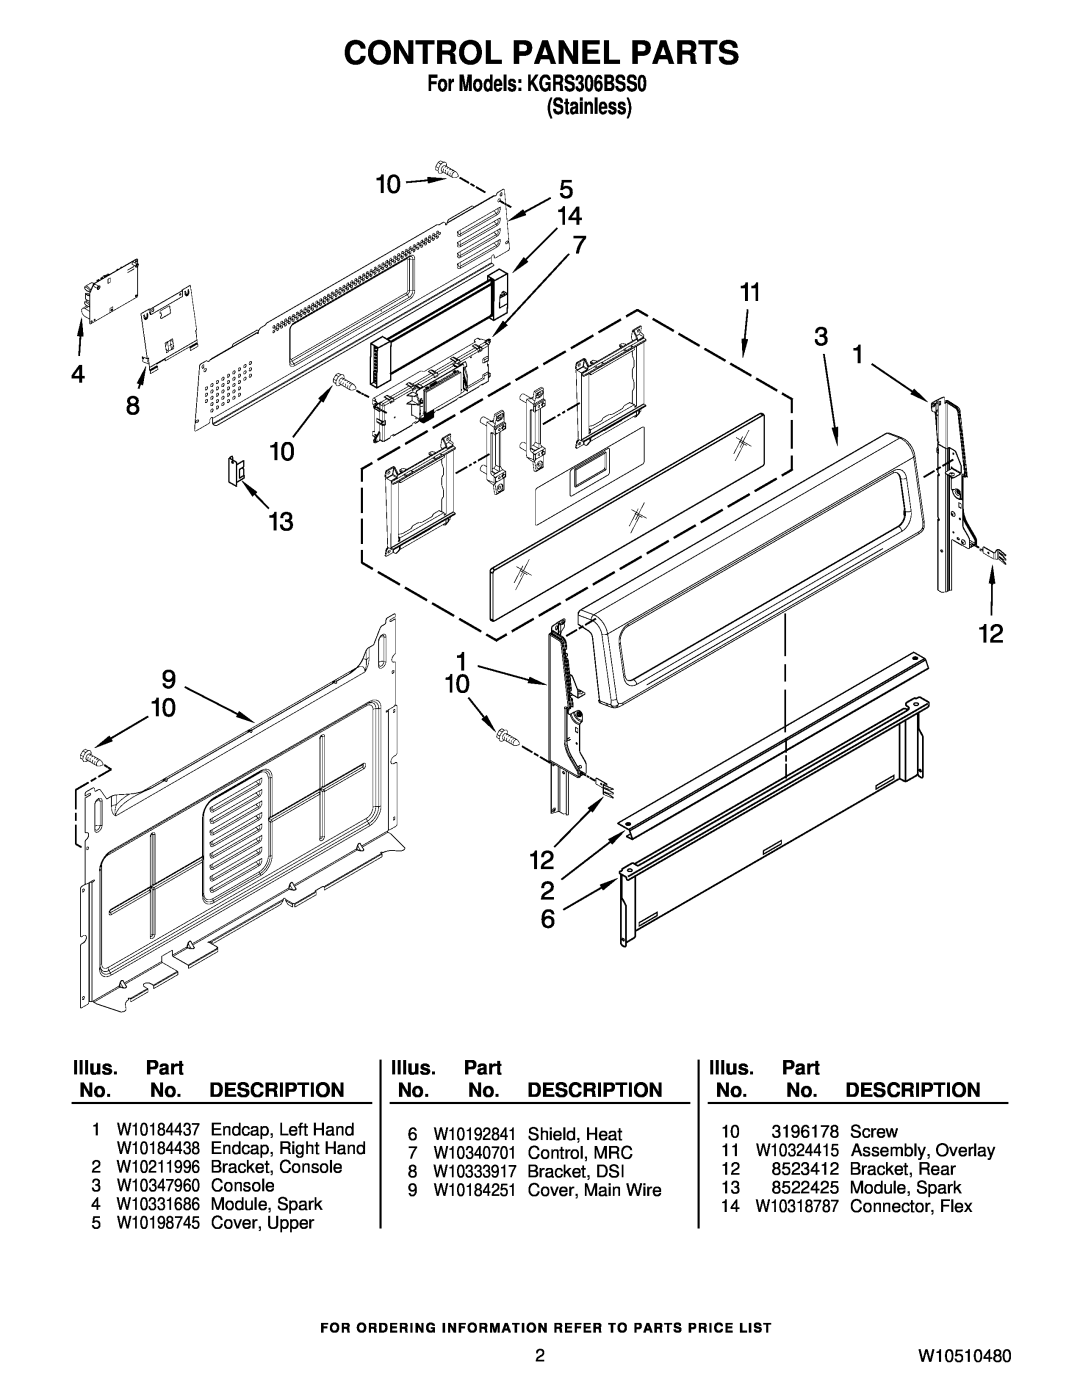 KitchenAid Control Panel Parts, Illus. Part No. No. DESCRIPTION, For Models KGRS306BSS0 Stainless 